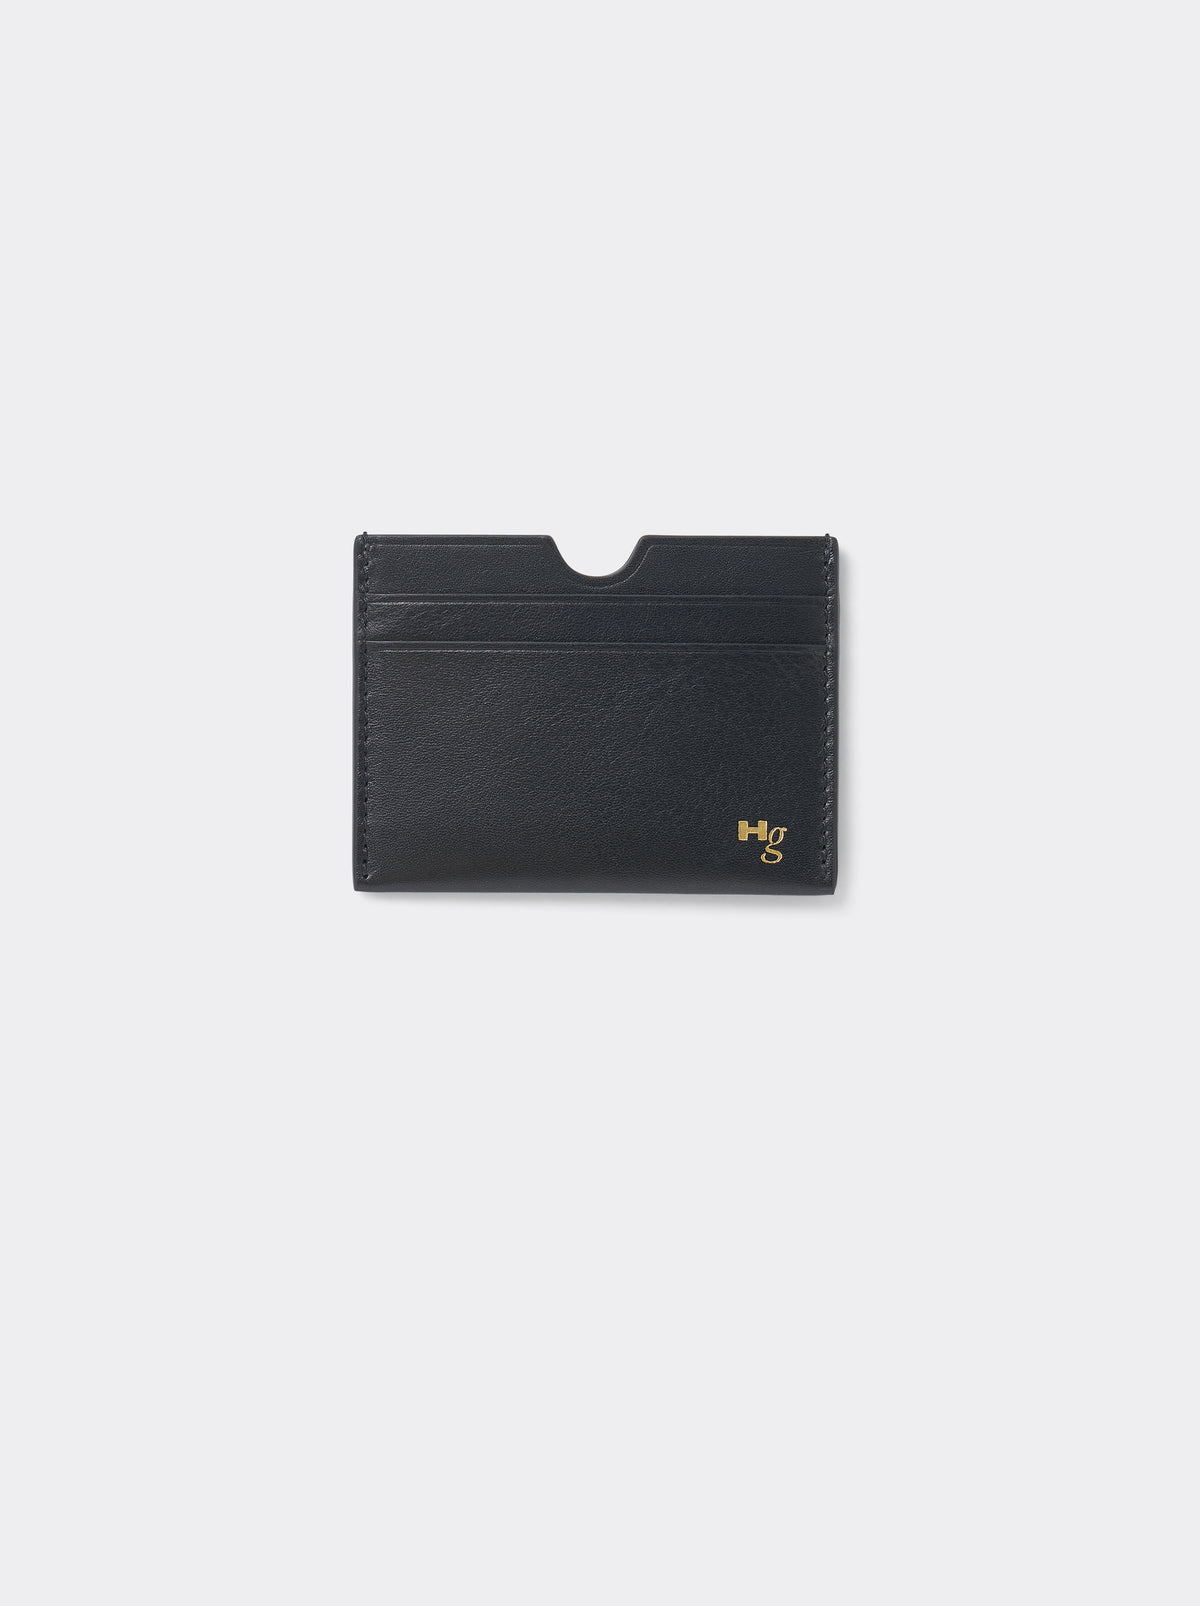 Credit Card Holder in Black